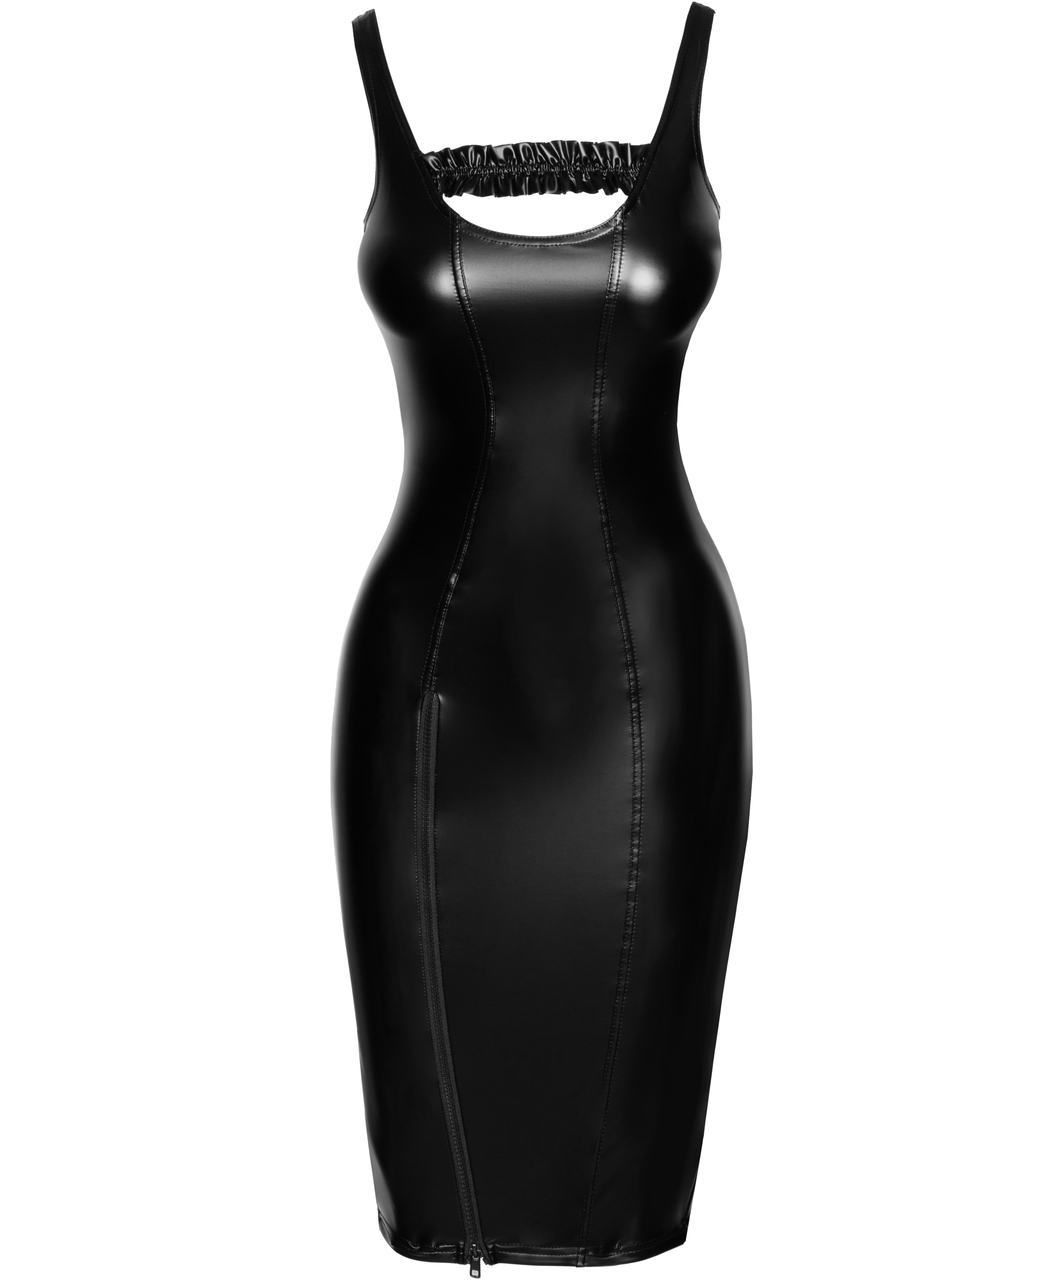 Noir Handmade черное матовое платье с застежкой-молнией спереди